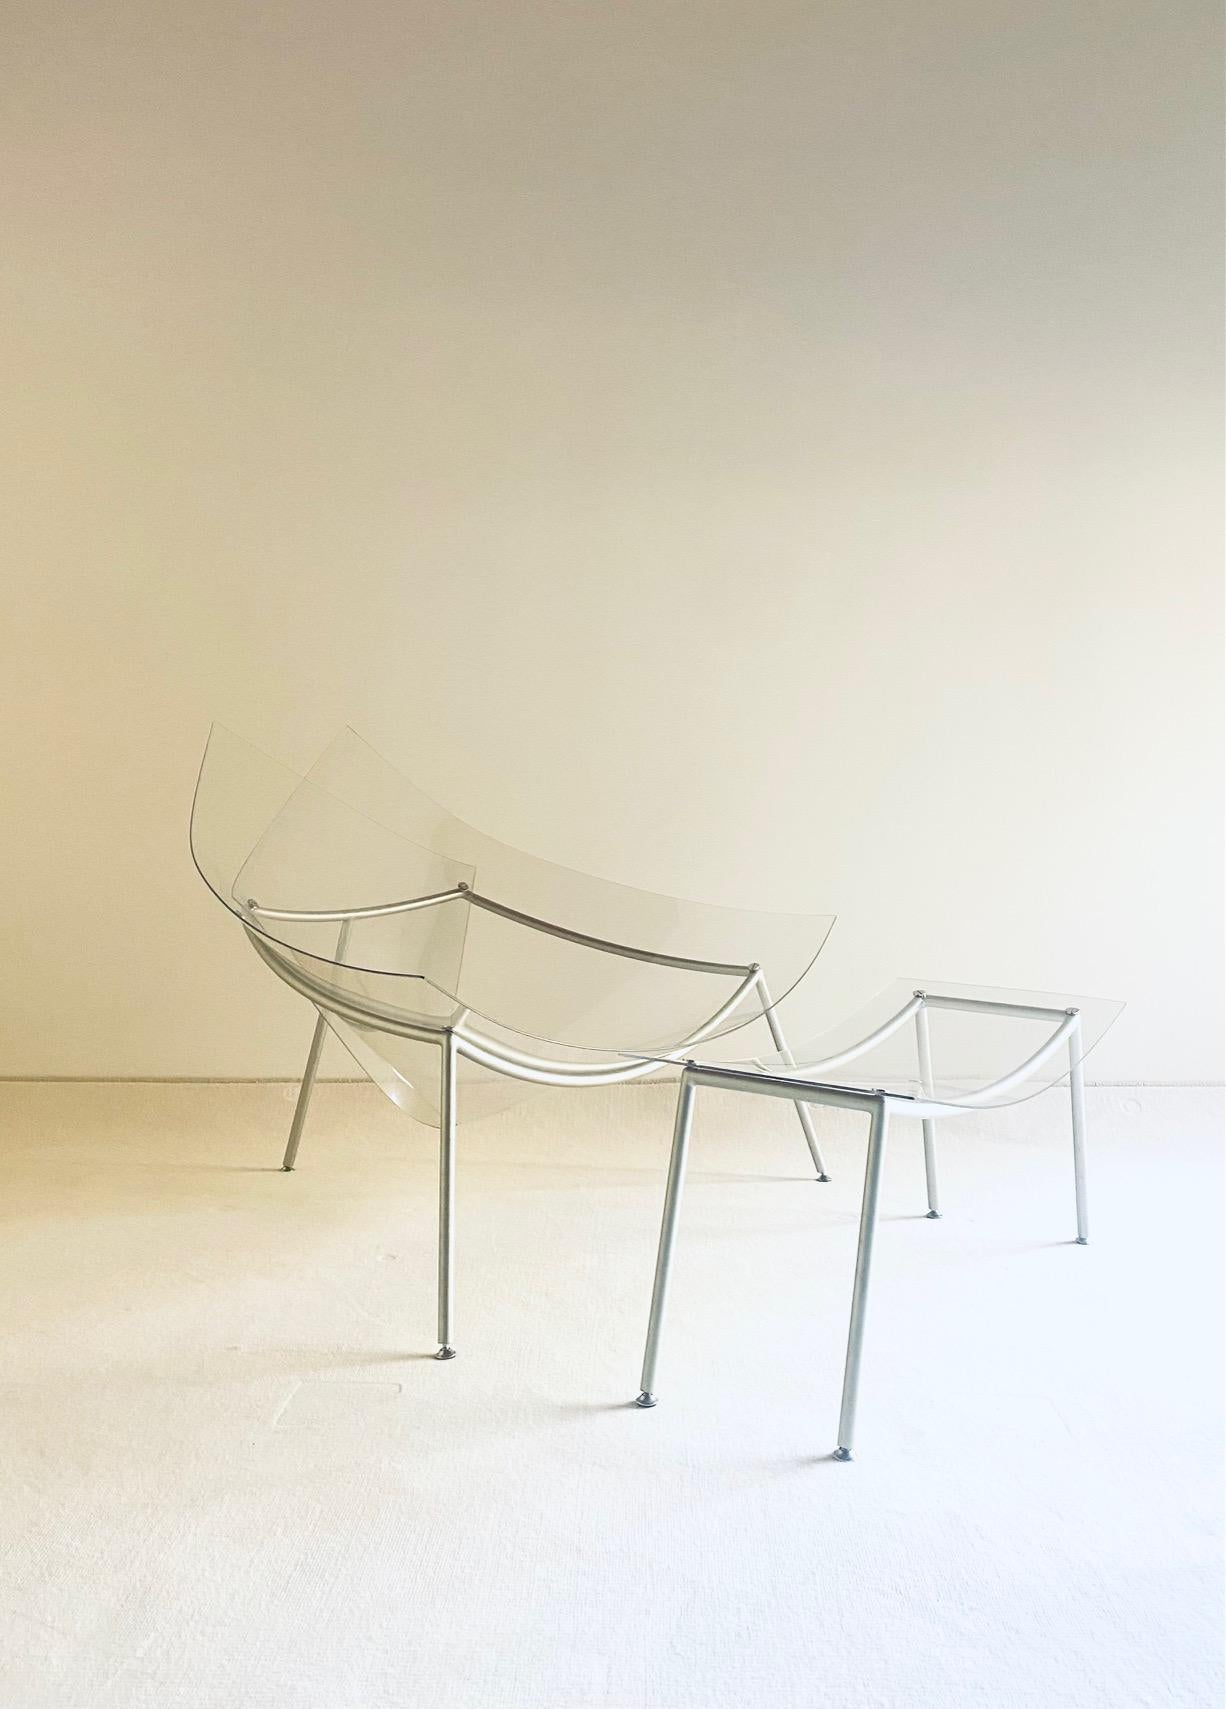 Sehr schöner Kegelstuhl, entworfen von Fernando & Humberto Campana für Edra, Italien, 1997. 

 Er besteht aus einem grau lackierten Metallrohrgestell und hat einen Sitz aus transparentem Plexiglas. Der Stuhl ist in sehr gutem Zustand mit nur